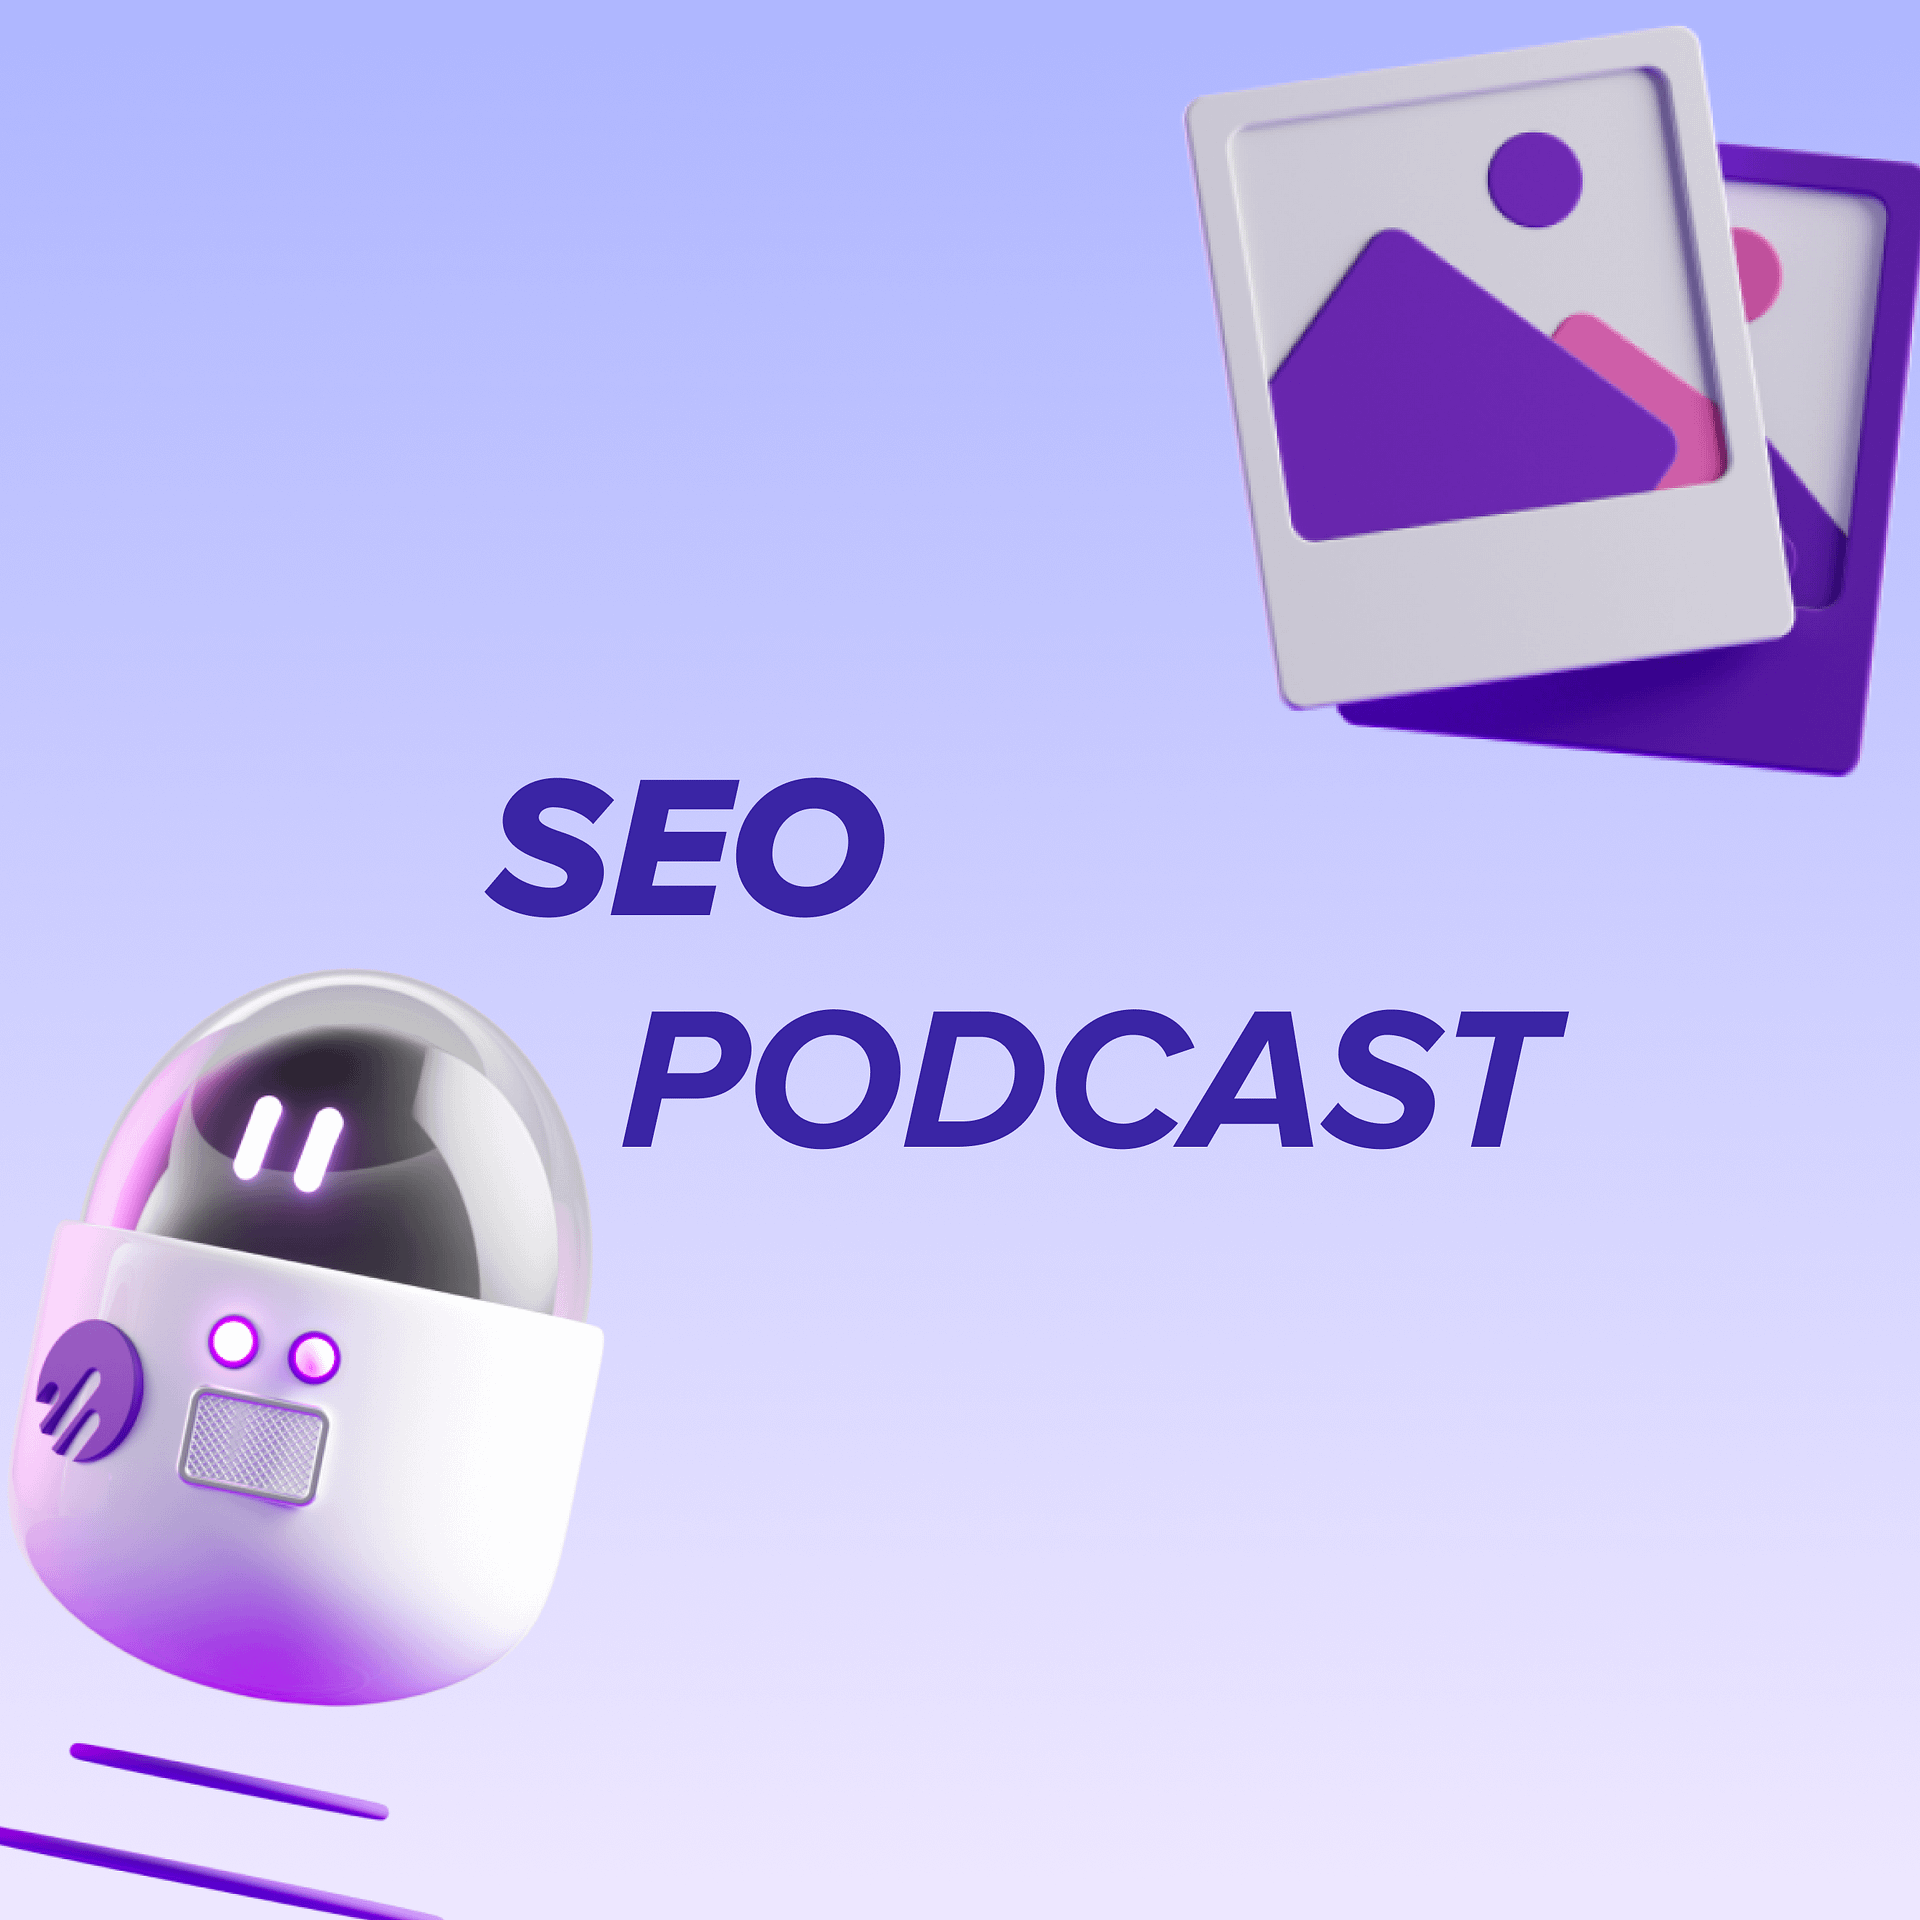 SEO Podcast : Comment choisir les bons mots clés pour maximiser sa visibilité